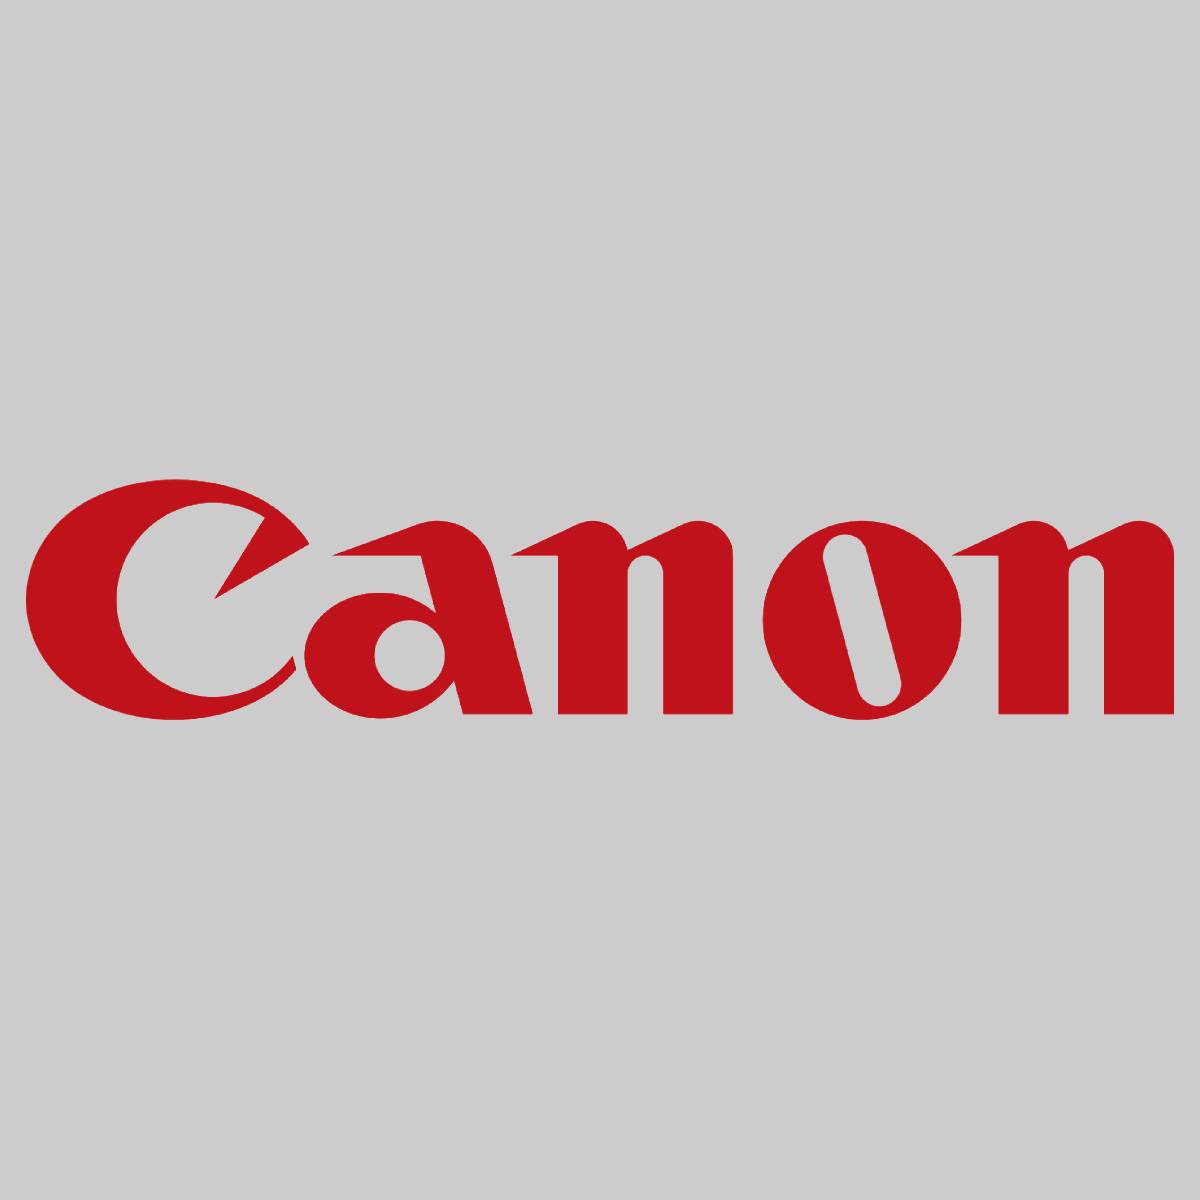 "Original Canon Transfer Roller 1 FC8-6852-000 pour imagePRESS C6000 C7000 NOUVEAU^